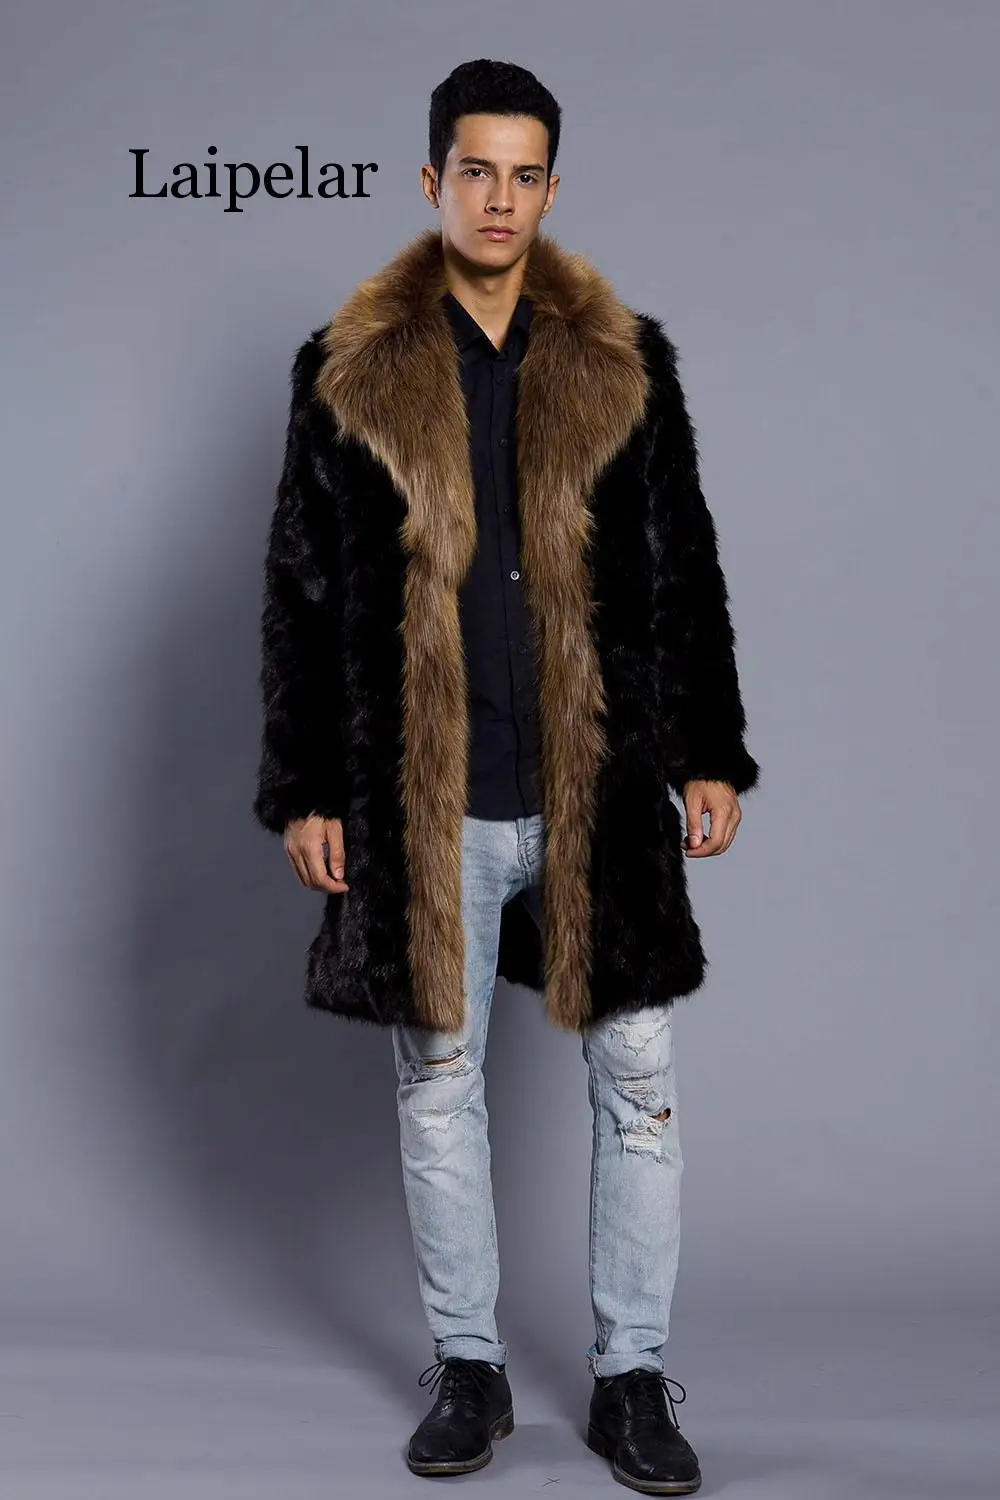 

Laipelar New Luxury Fur Coat Jackets Men's Long Faux Fur Coat England Style Warmed Winter Coats Chic Handsome Boy's Fur Outwear